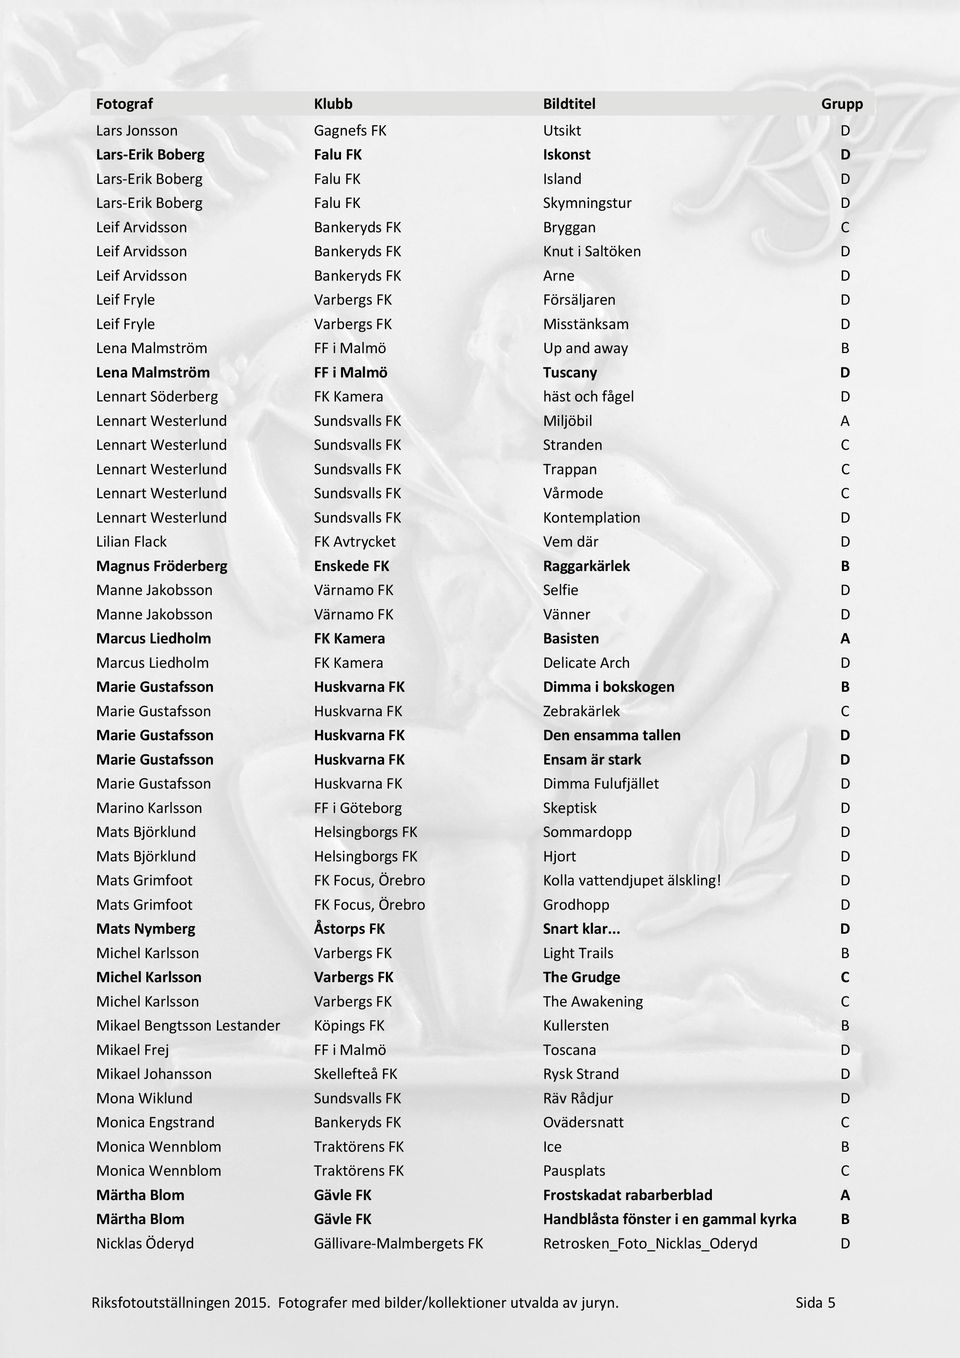 Malmö Tuscany D Lennart Söderberg FK Kamera häst och fågel D Lennart Westerlund Sundsvalls FK Miljöbil A Lennart Westerlund Sundsvalls FK Stranden C Lennart Westerlund Sundsvalls FK Trappan C Lennart